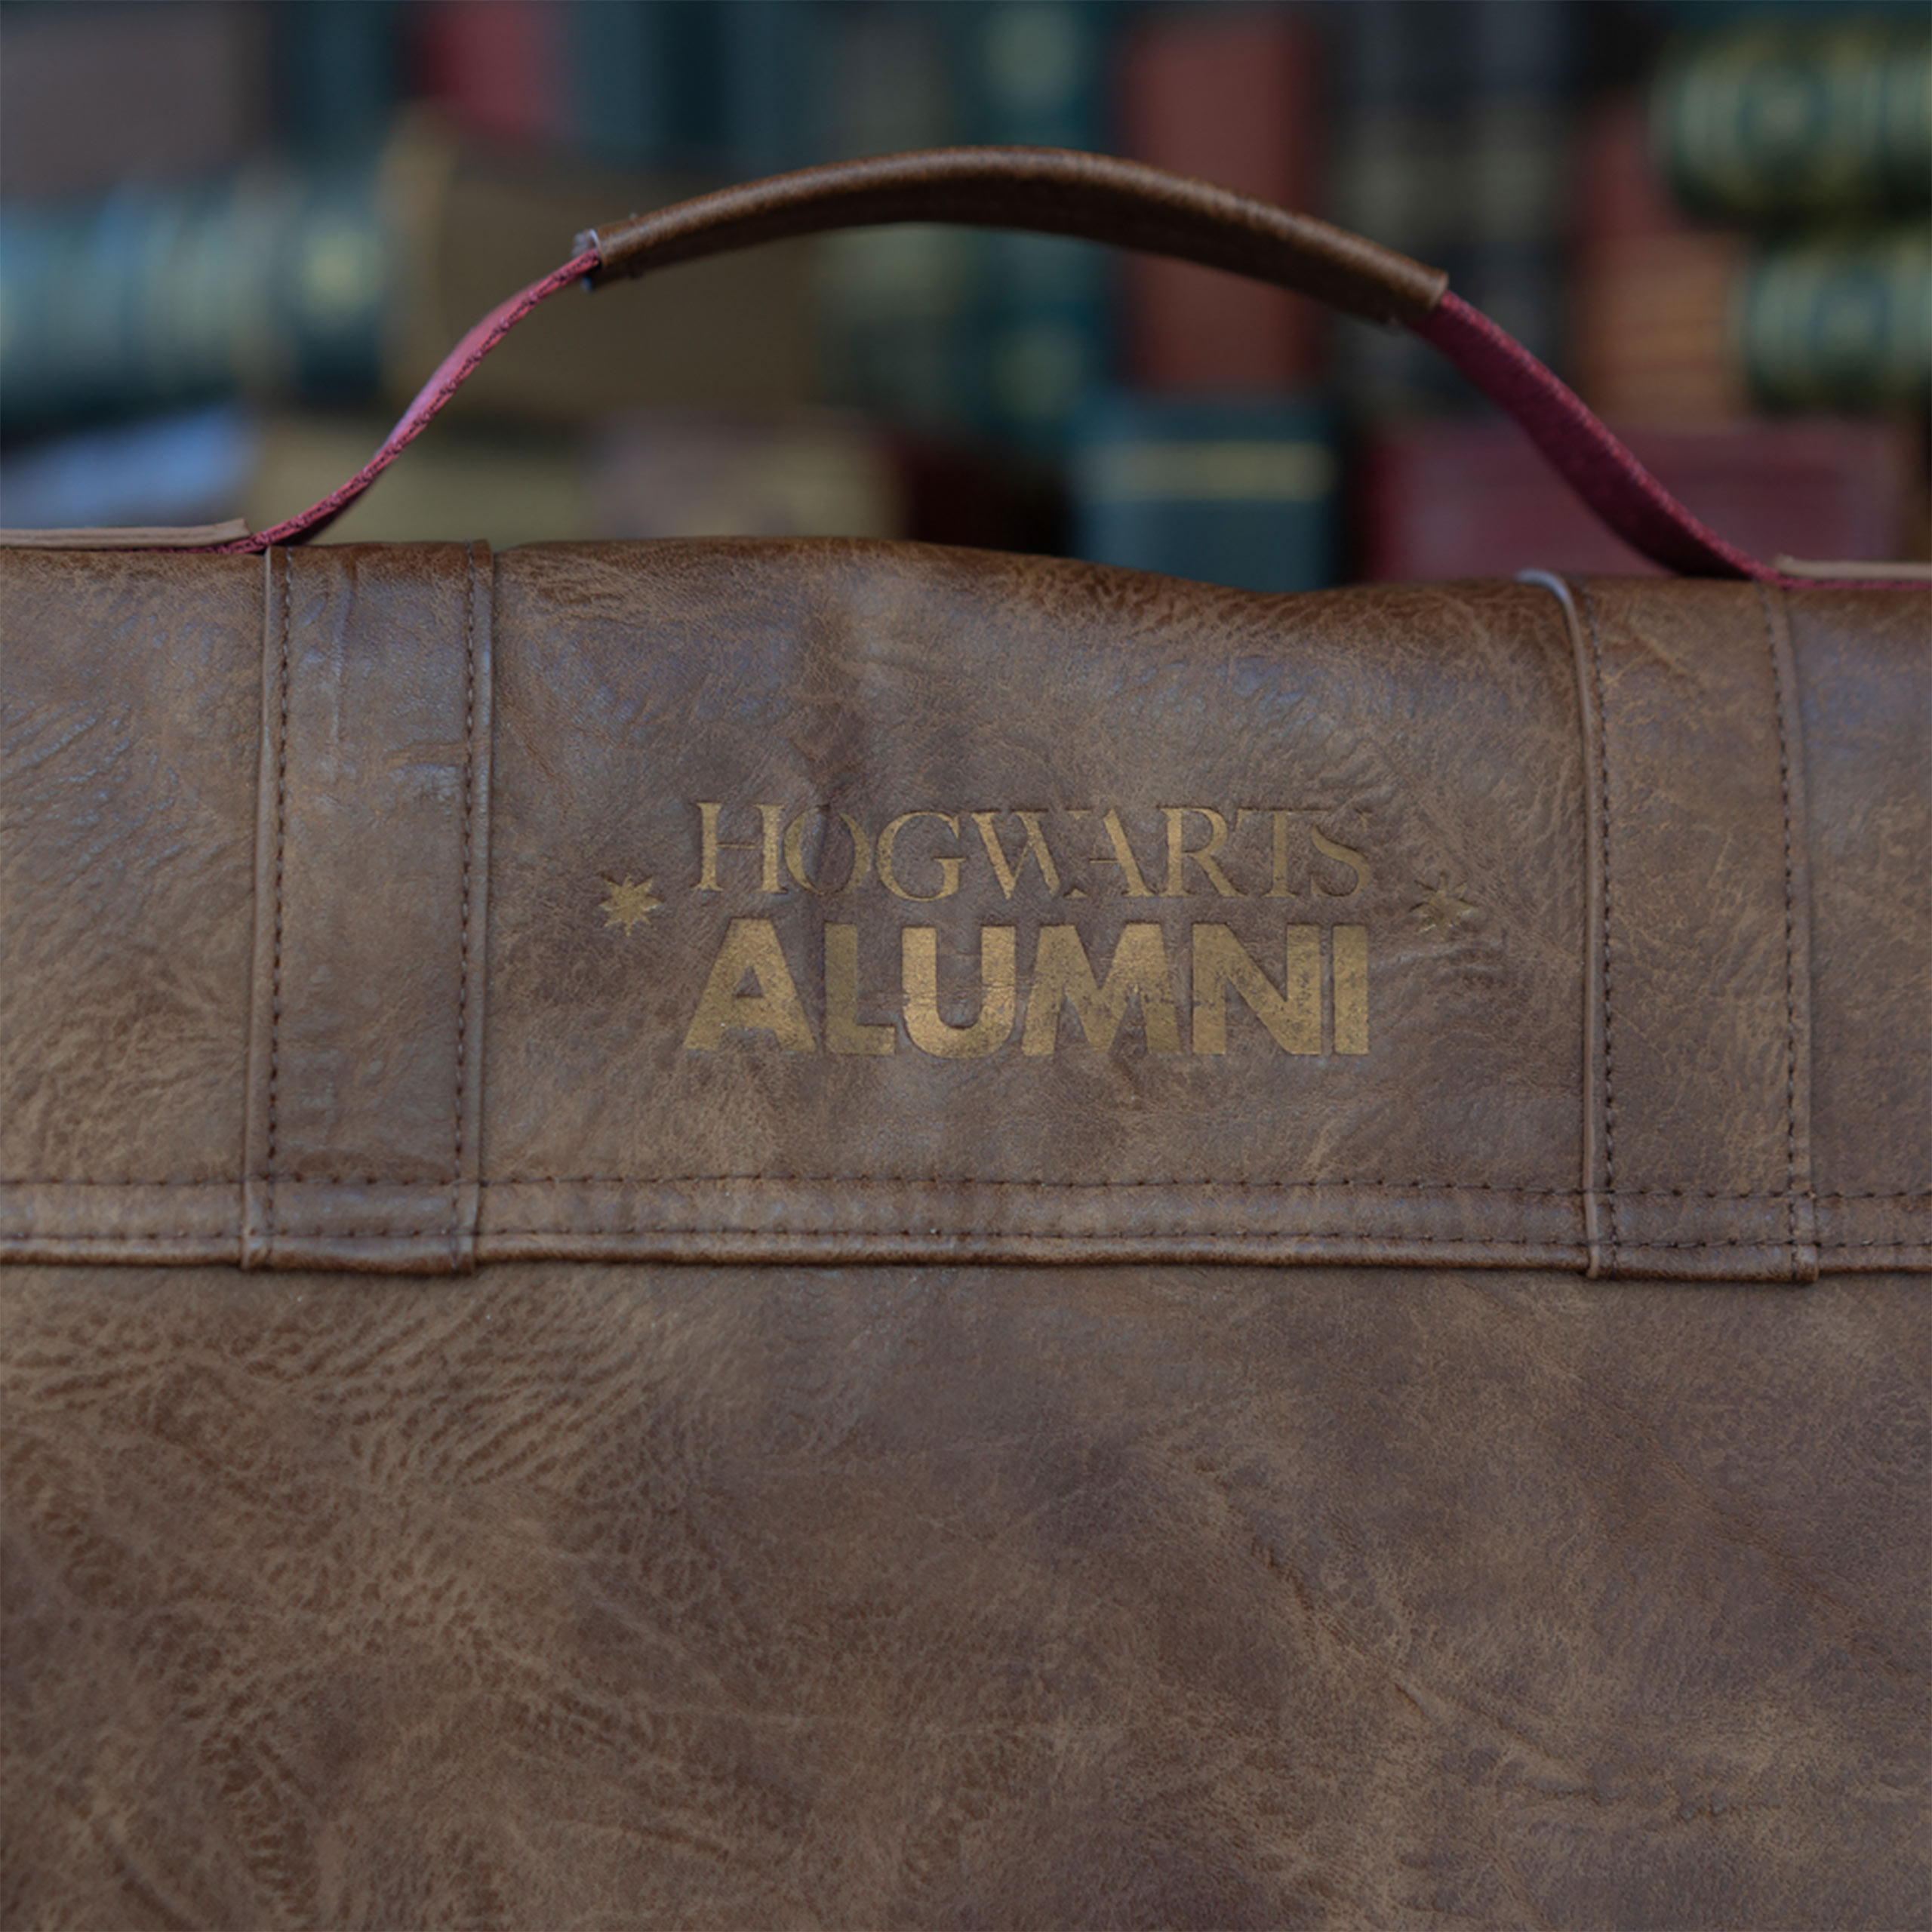 Harry Potter - Hogwarts Alumni Shoulder Bag